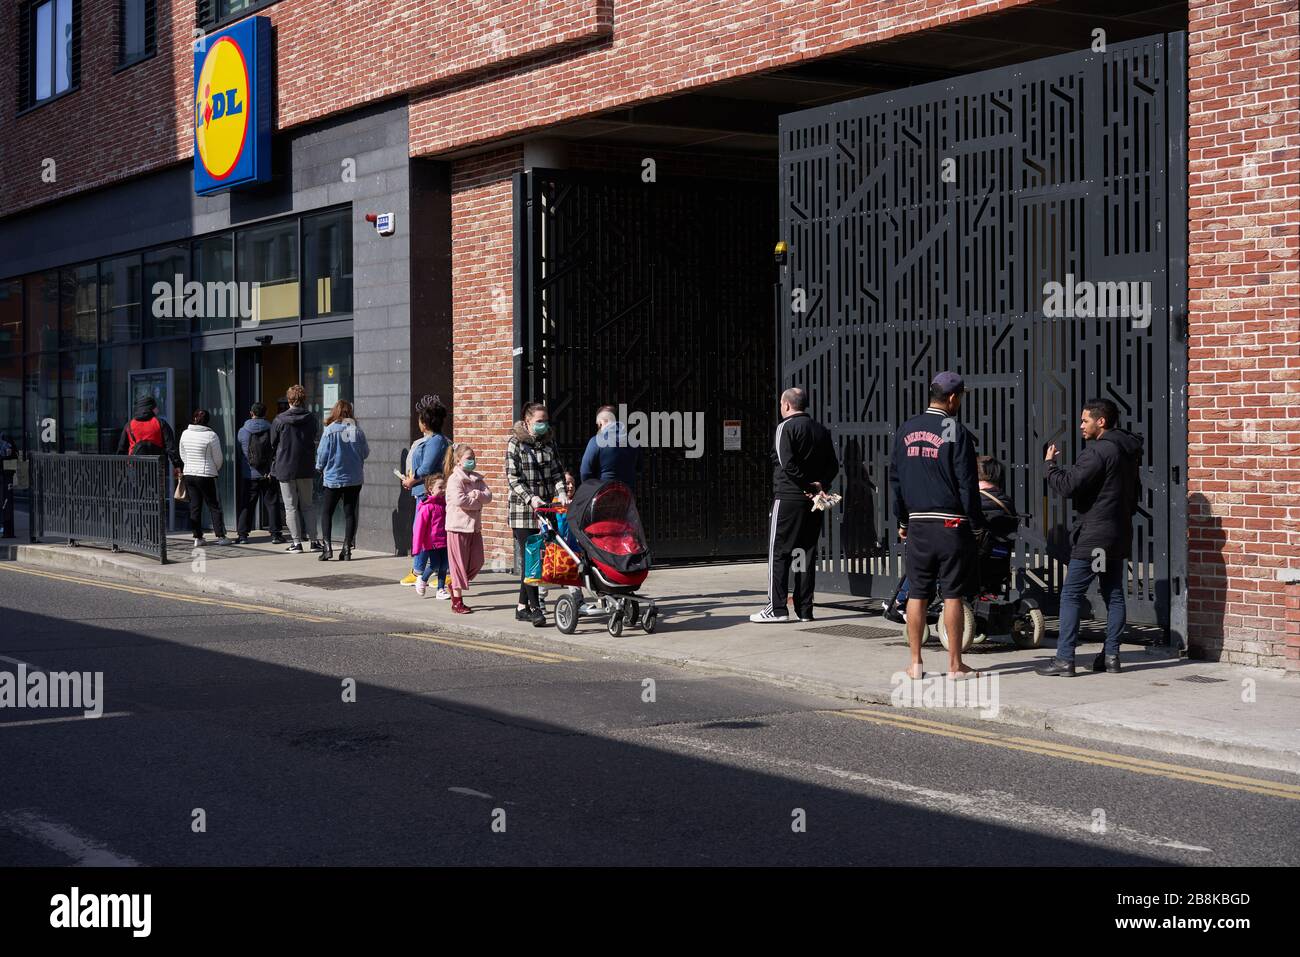 Menschen, die während der Pandemie von Coronavirus, Dublin City, irland, vor einem Supermarkt Schlange stehen und dabei eine sichere Entfernung halten. Stockfoto